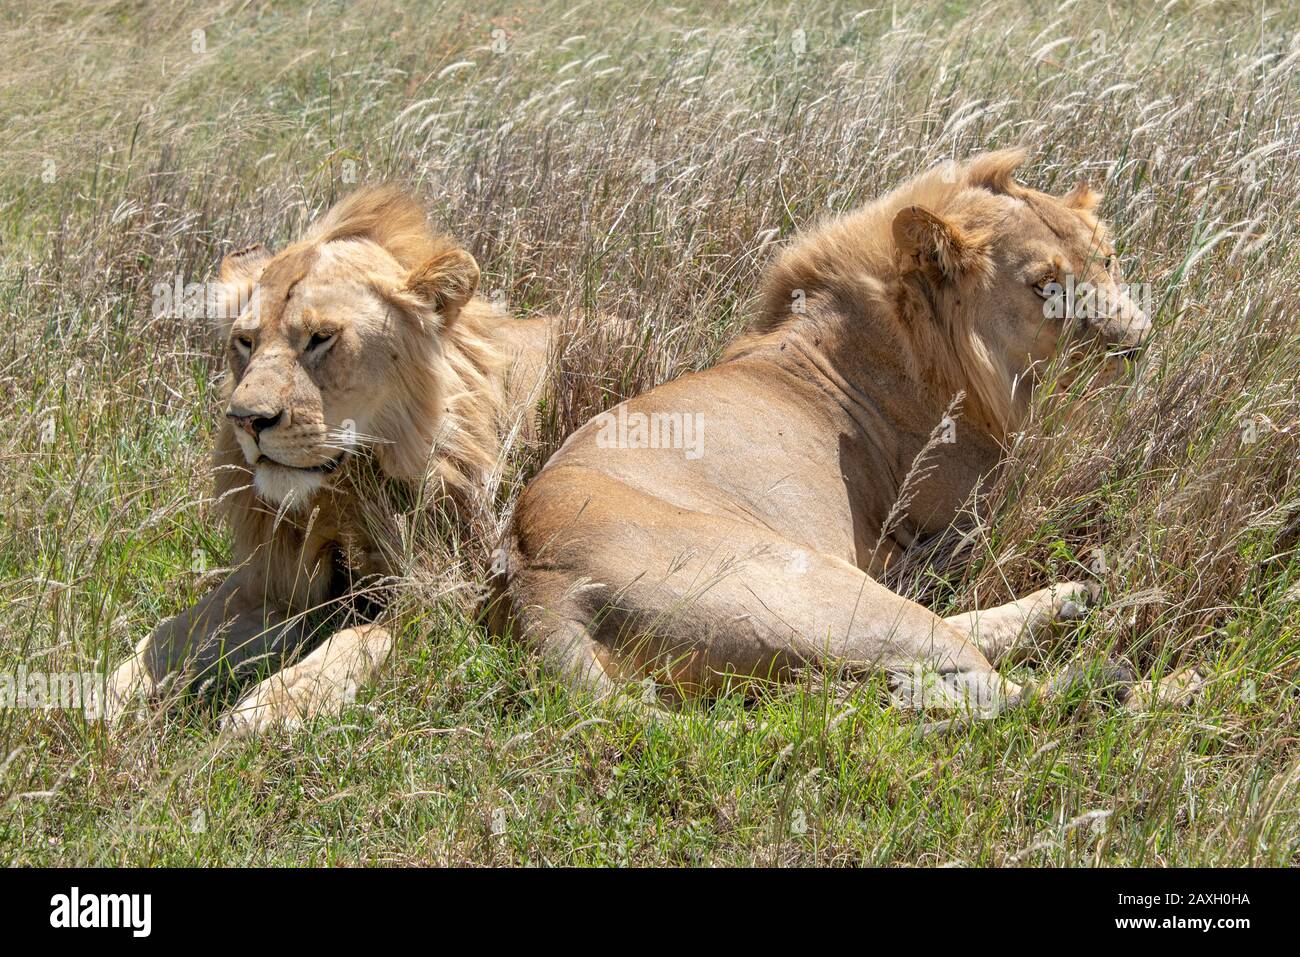 Este hermoso par de jóvenes Leones varones descansaban felizmente bajo el sol del mediodía. Foto de stock